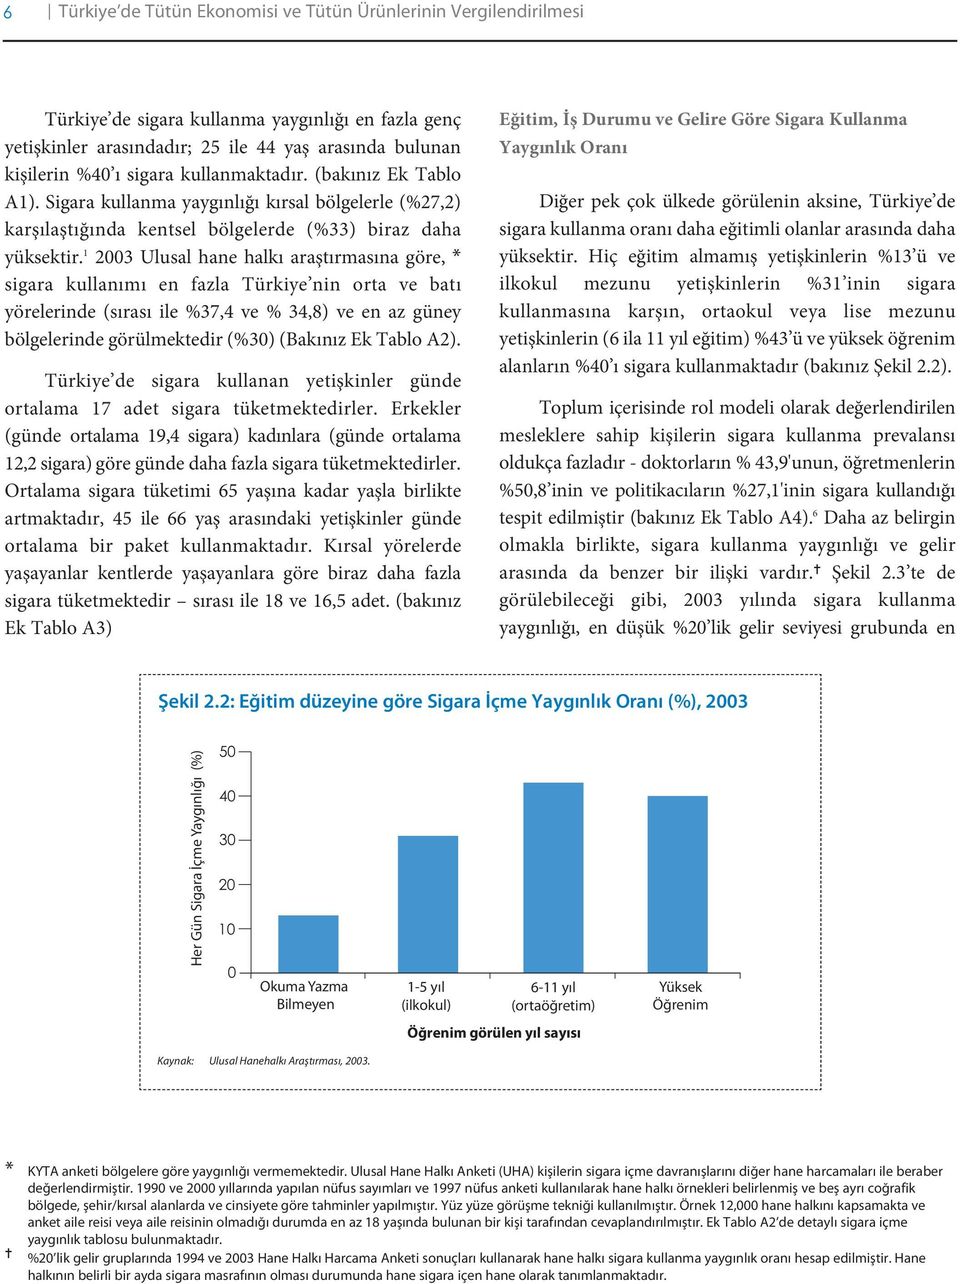 1 2003 Ulusal hane halkı araştırmasına göre, * sigara kullanımı en fazla Türkiye nin orta ve batı yörelerinde (sırası ile %37,4 ve % 34,8) ve en az güney bölgelerinde görülmektedir (%30) (Bakınız Ek